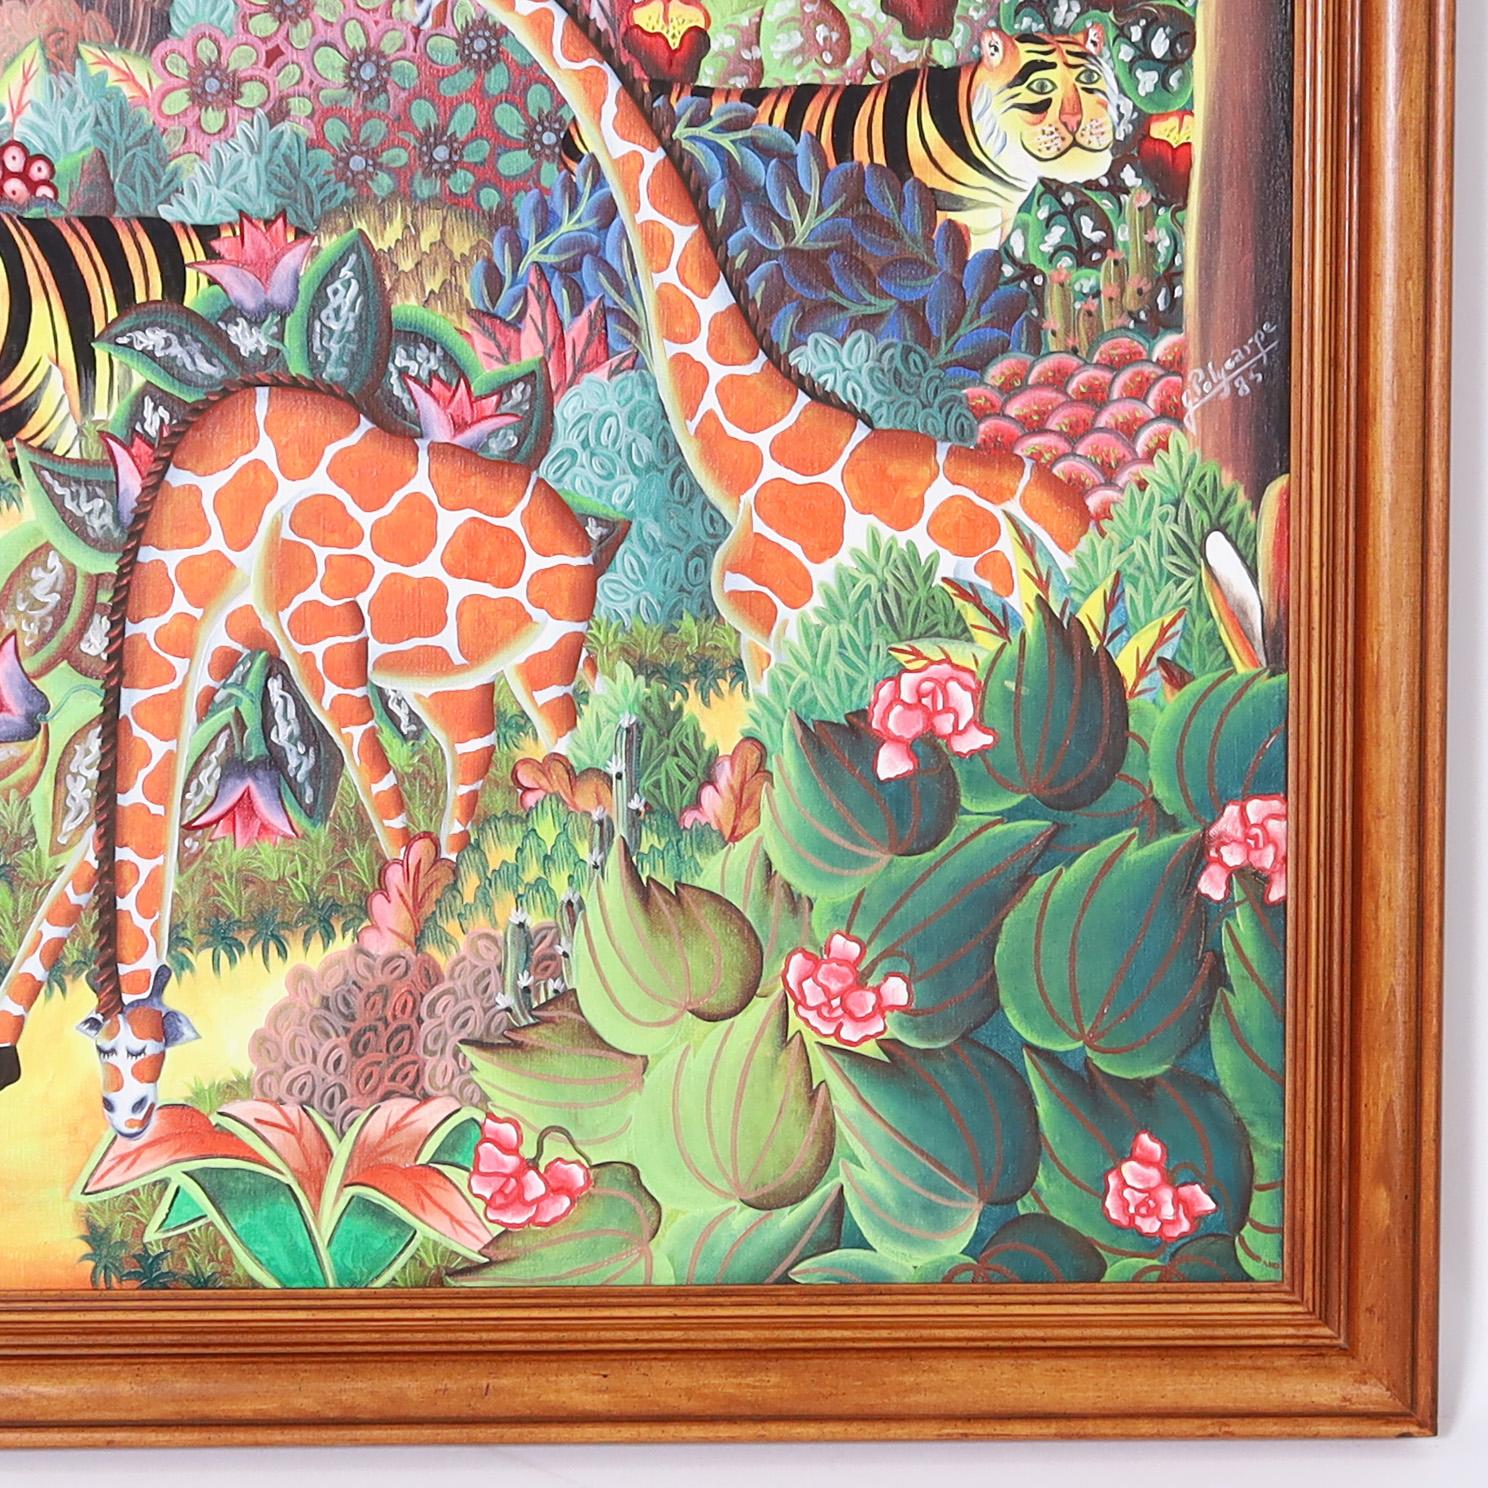 Großes auffallendes haitianisches Acrylgemälde auf Leinwand einer üppigen Dschungelszene mit Tieren, Bäumen und Blumen, ausgeführt in einem unverwechselbaren naiven Stil, signiert vom bekannten Künstler Jerome Polycarpe und präsentiert in einem